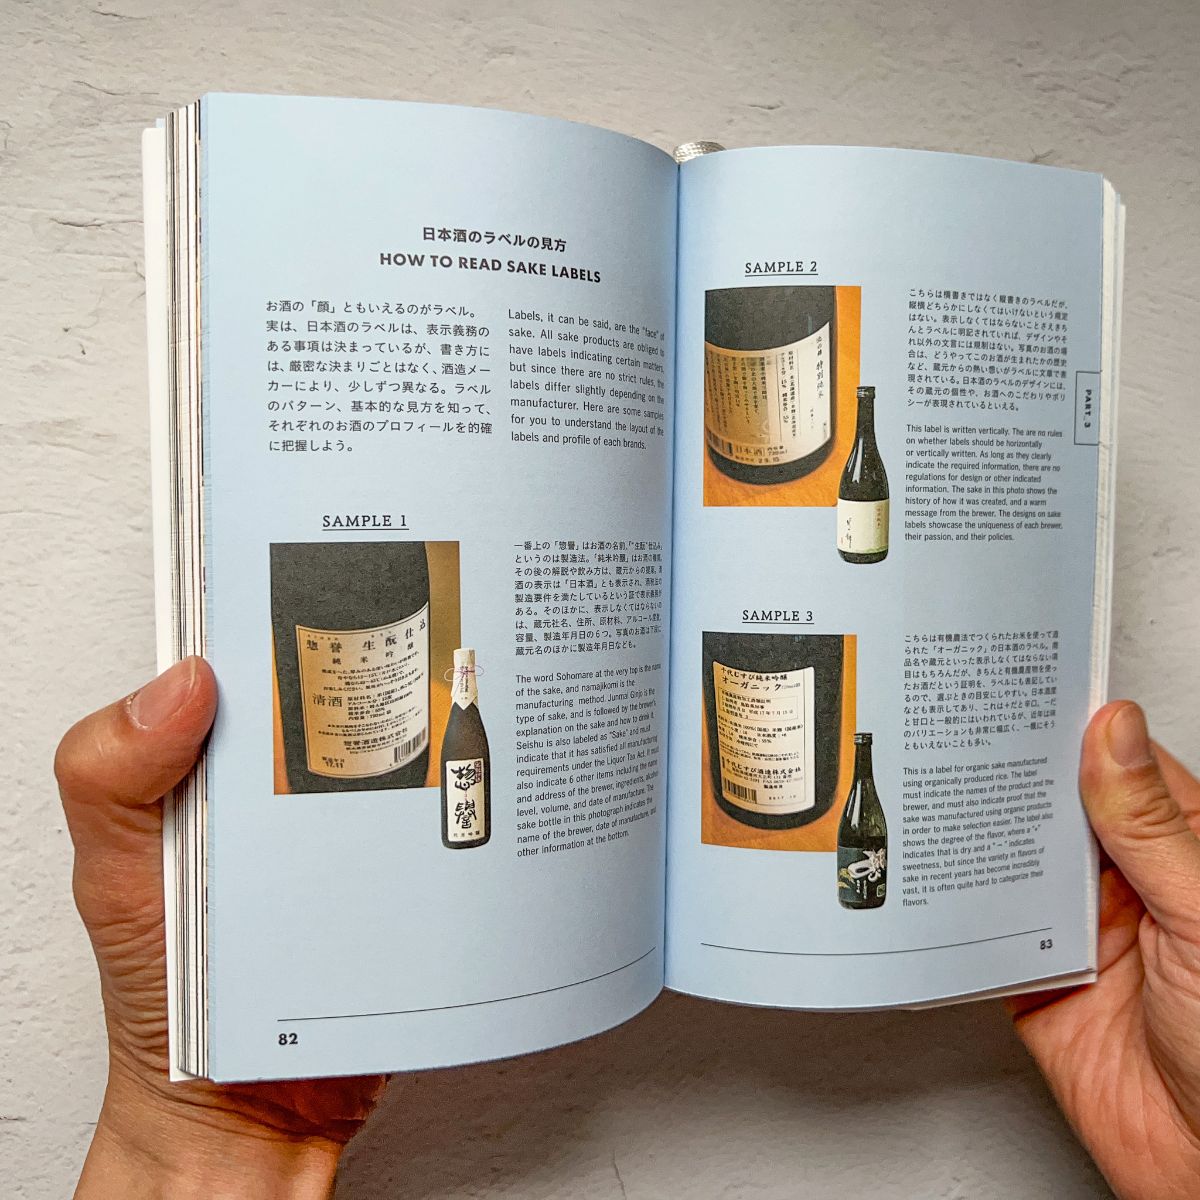 Tokyo Guide Book "TOKYO ARTRIP | Sake"Nagamochi Shop